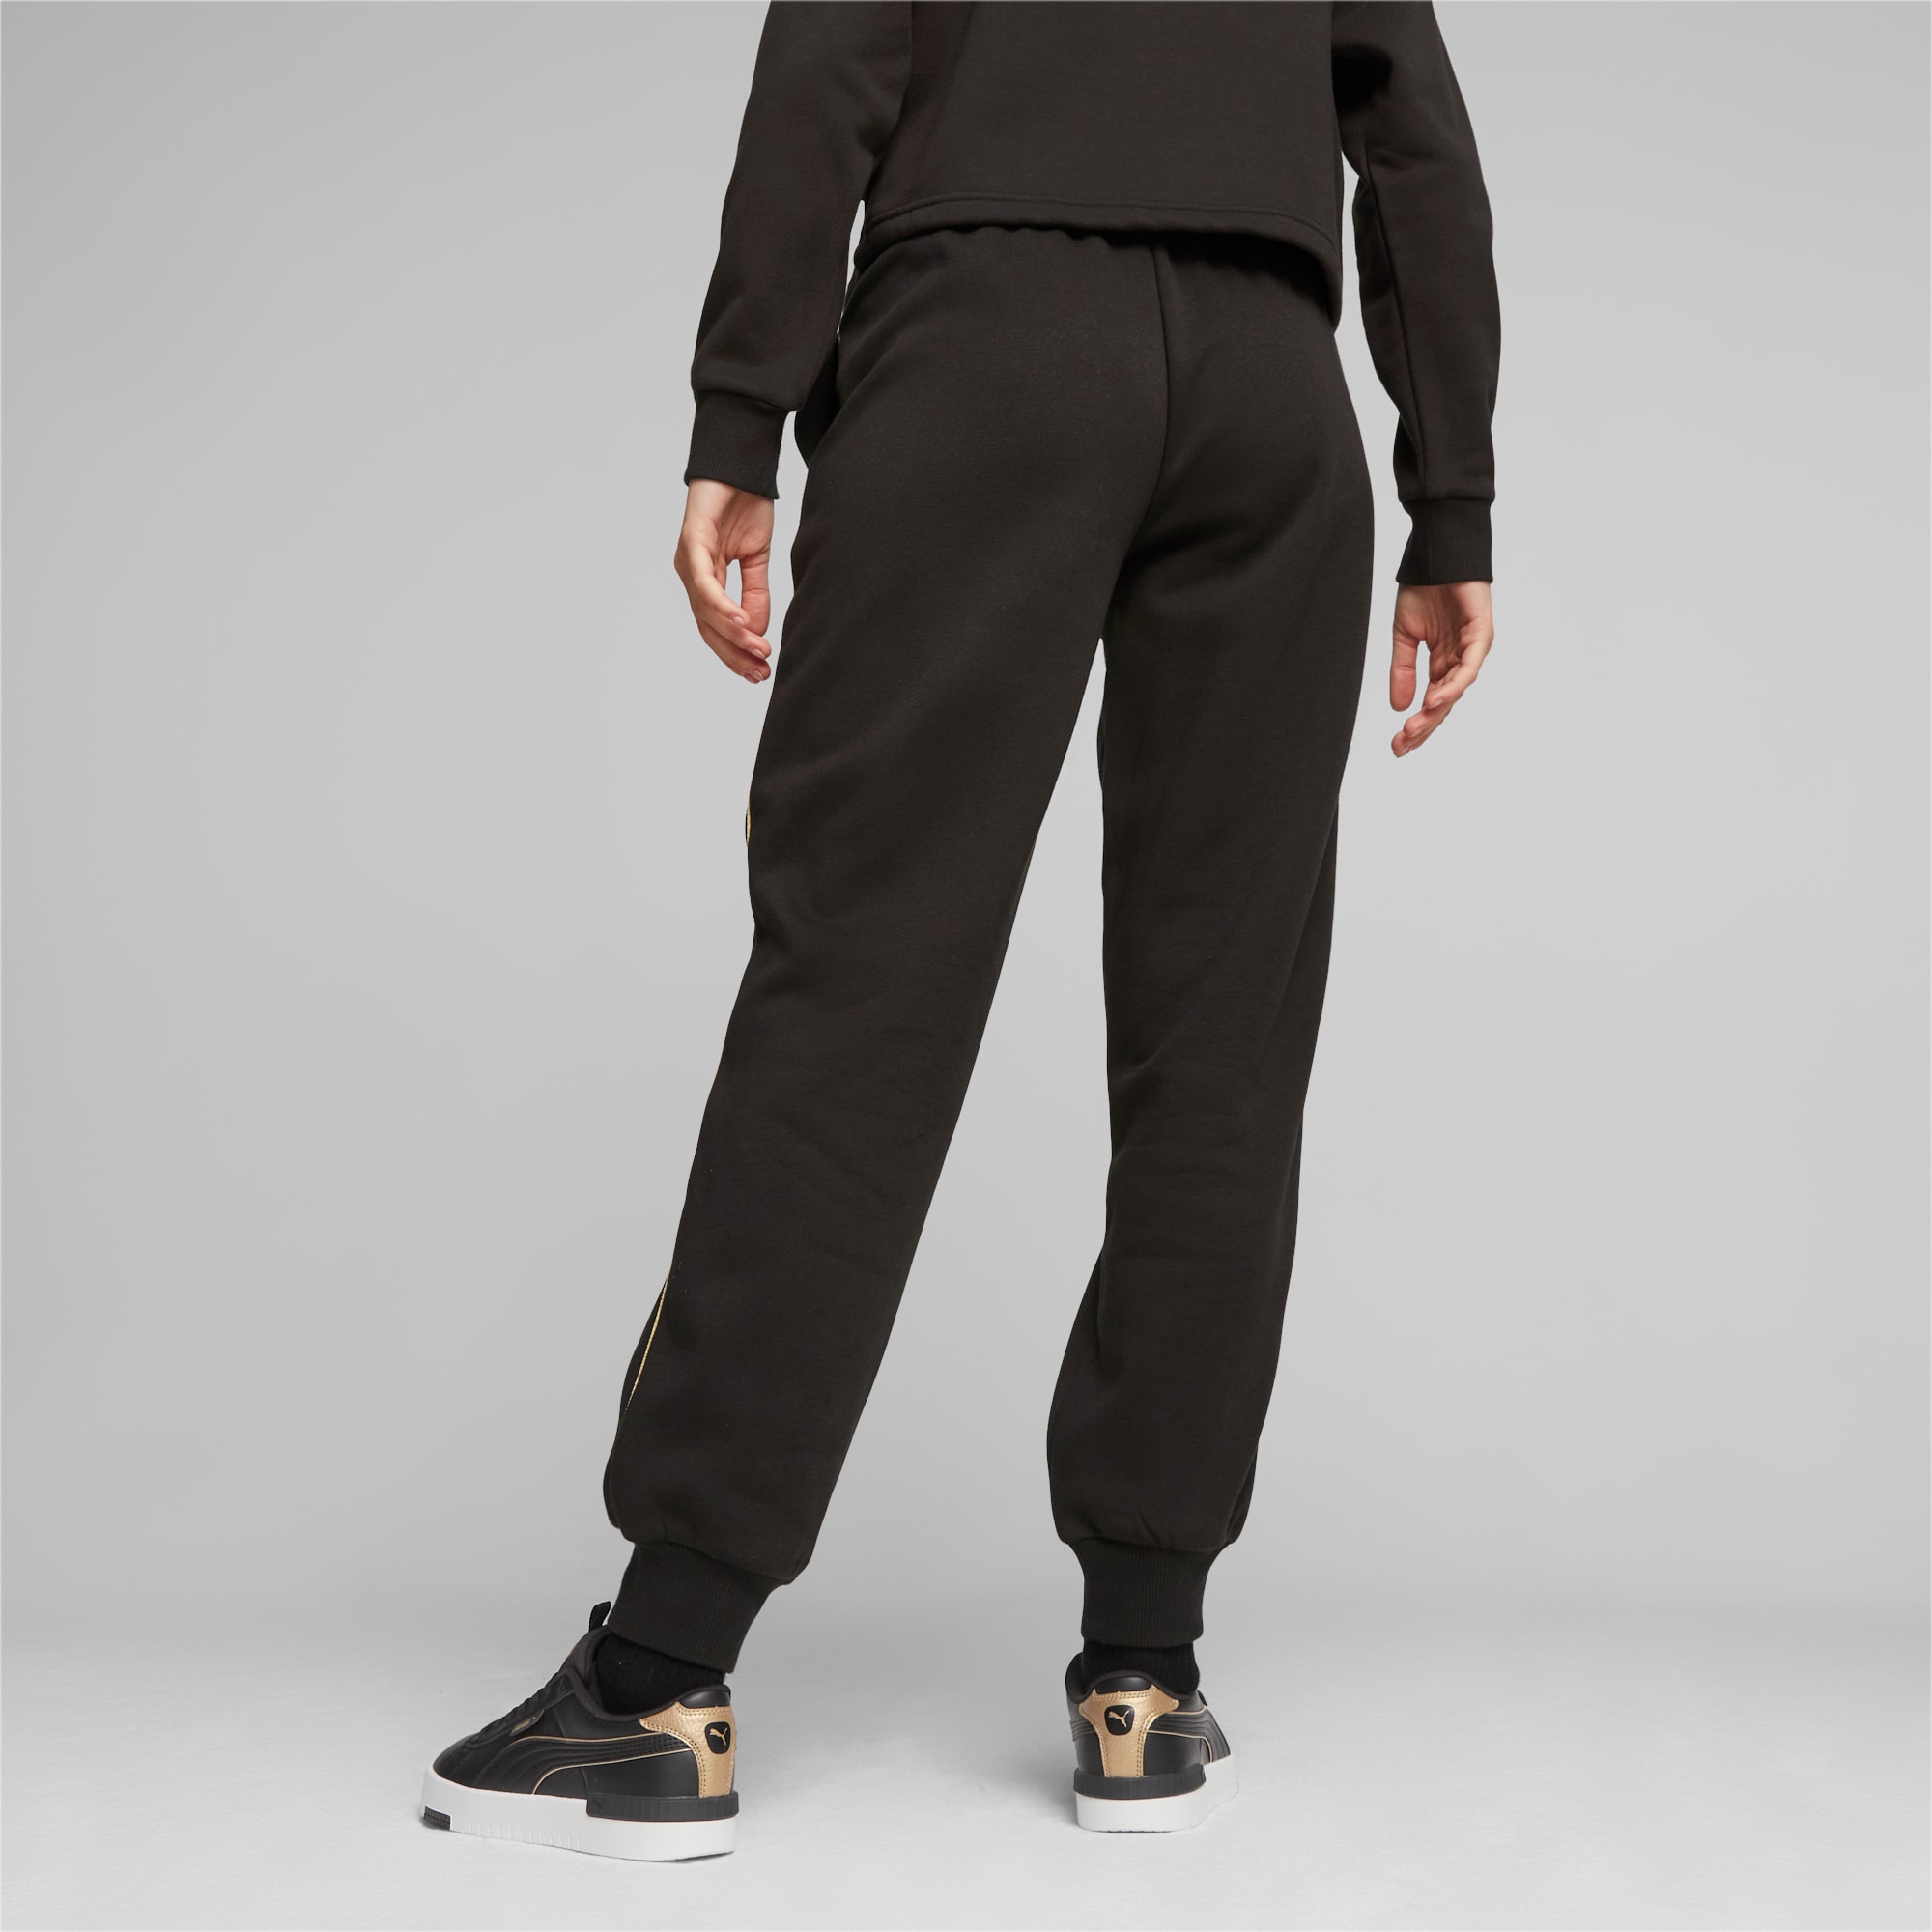 PUMA Ess+ Minimal Gold Women's Sweatpants, Black